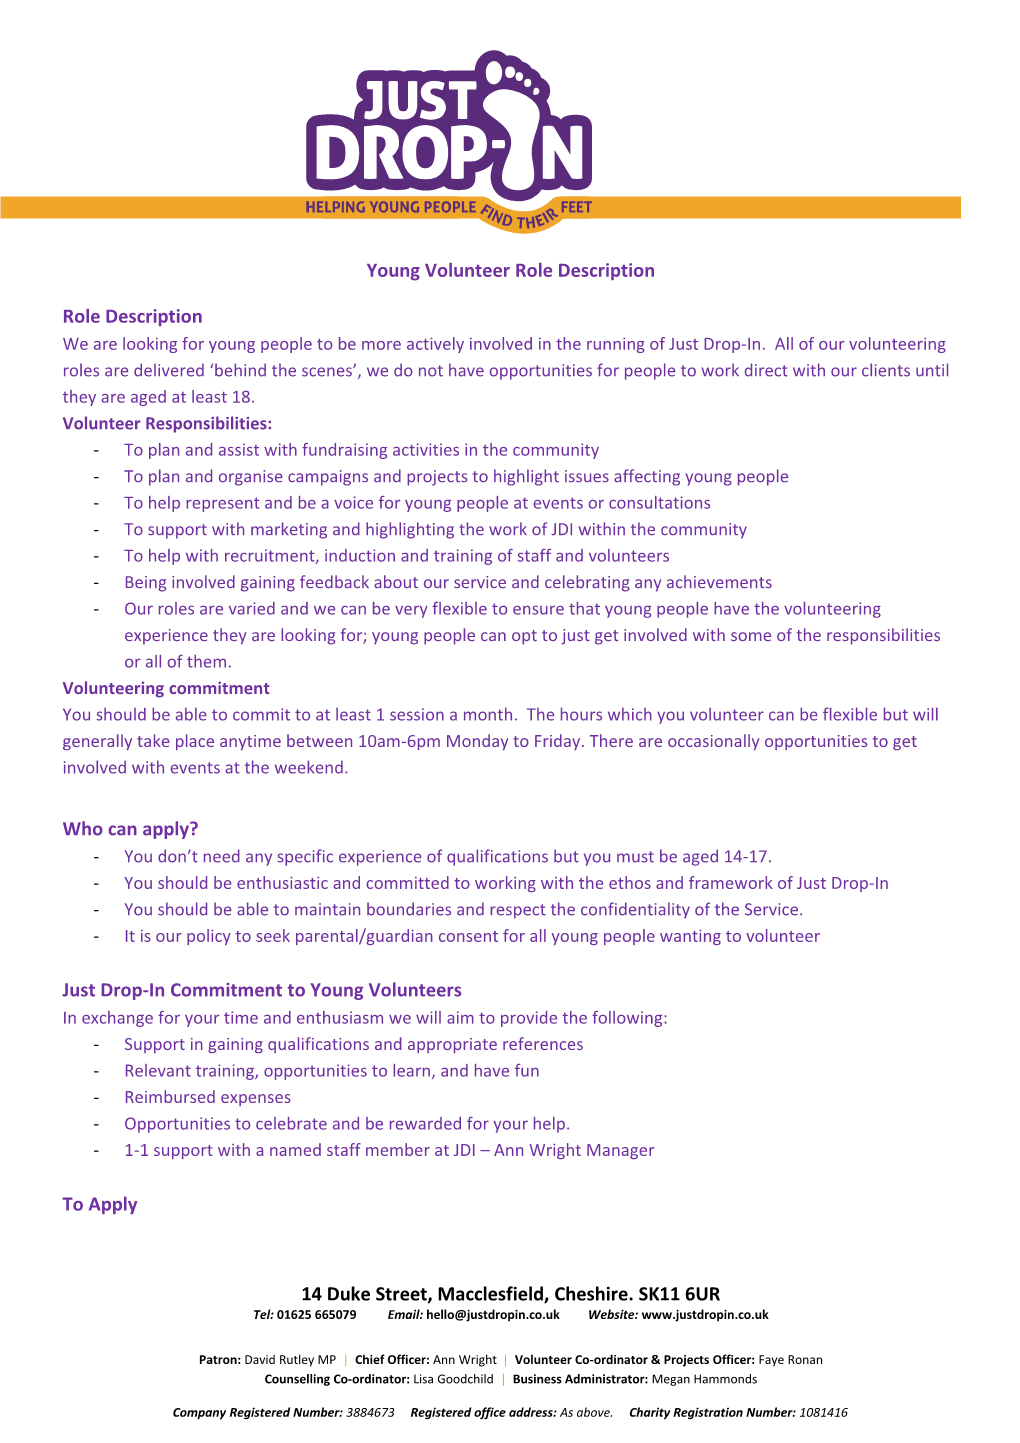 Young Volunteer Role Description